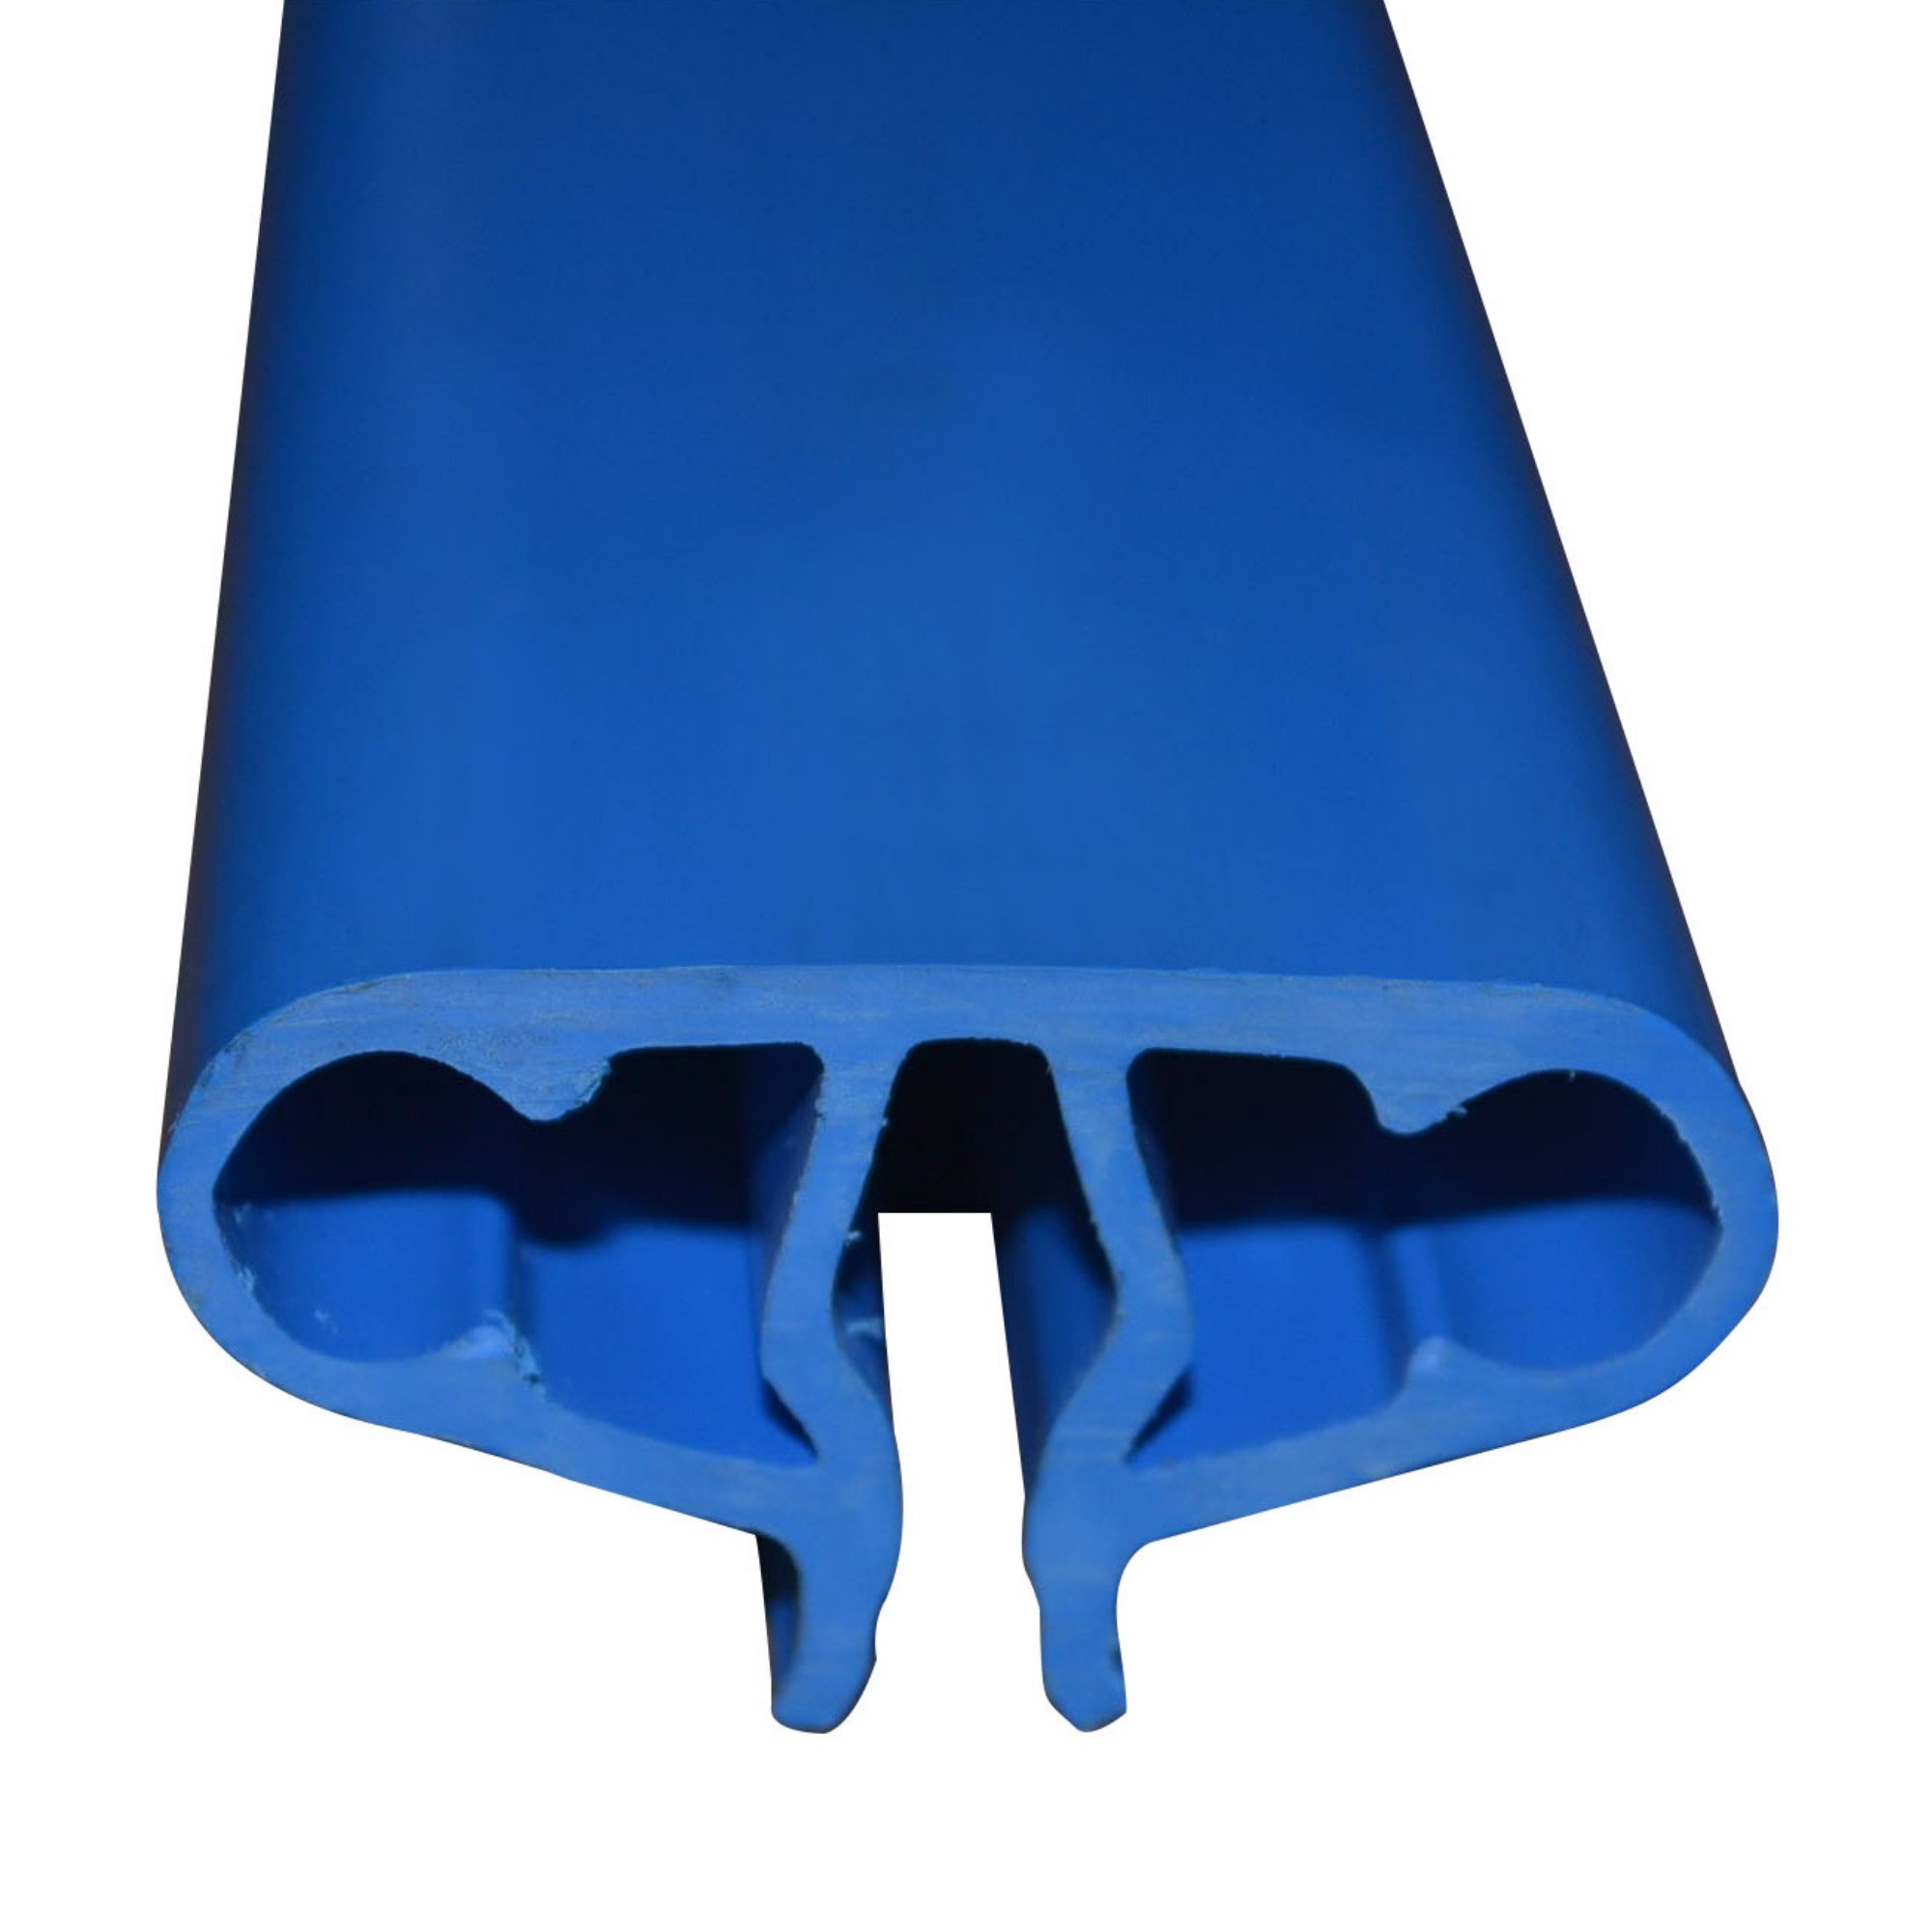 Stahlwandpool Set (6-teilig) hoch rund Malibu 350 x 120 cm, Stahl 0,4 mm weiß Folie 0,4 mm blau